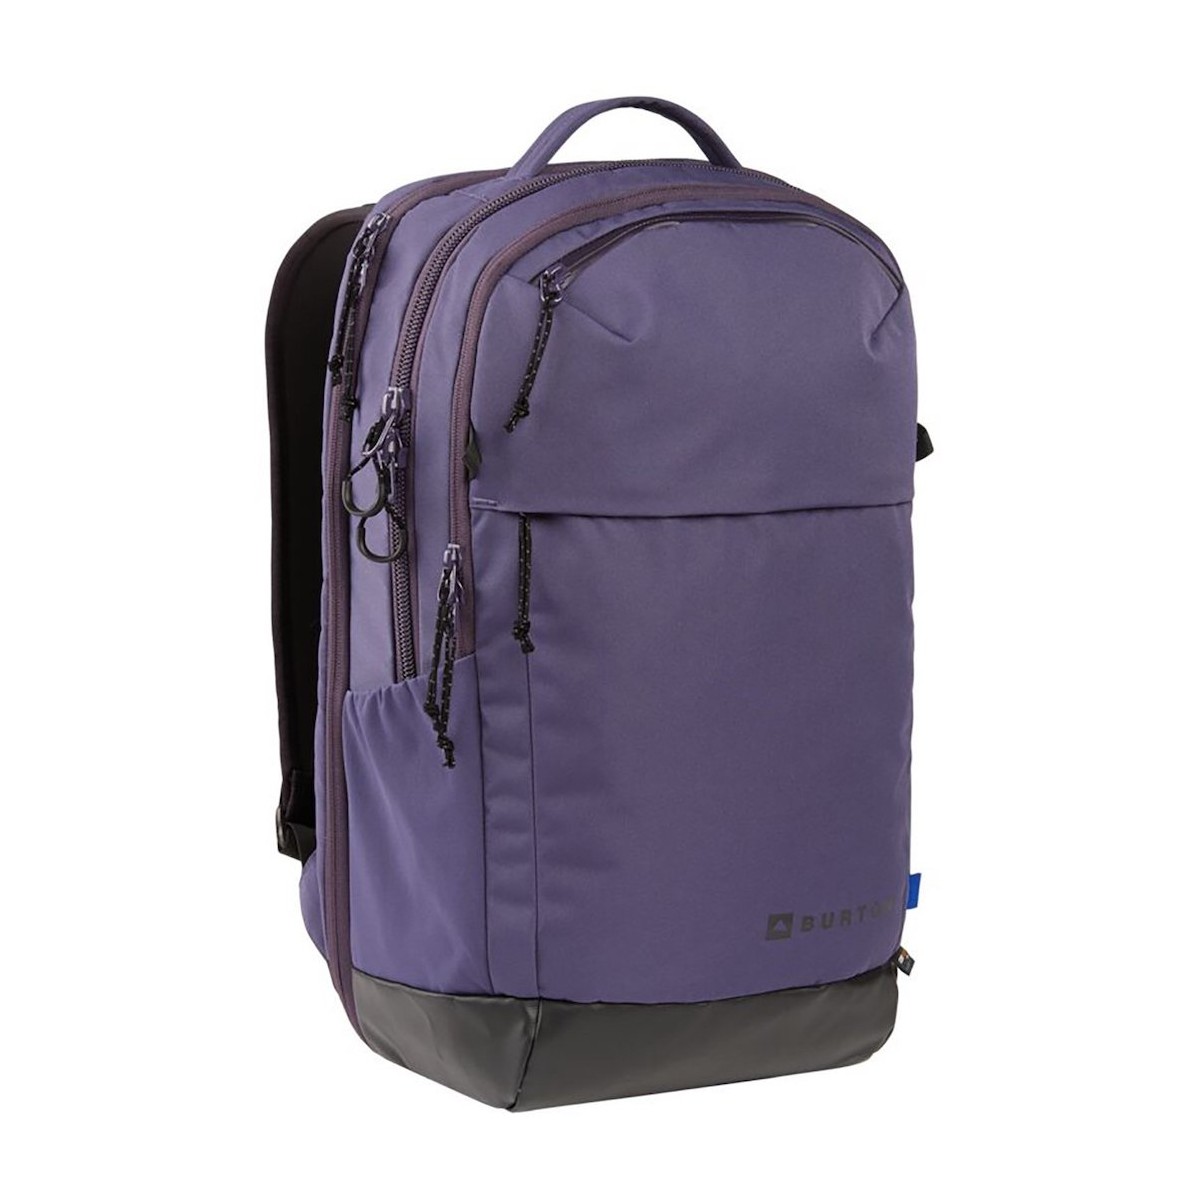 BURTON MULTIPATH DAYPACK 25L backpack - violet/black